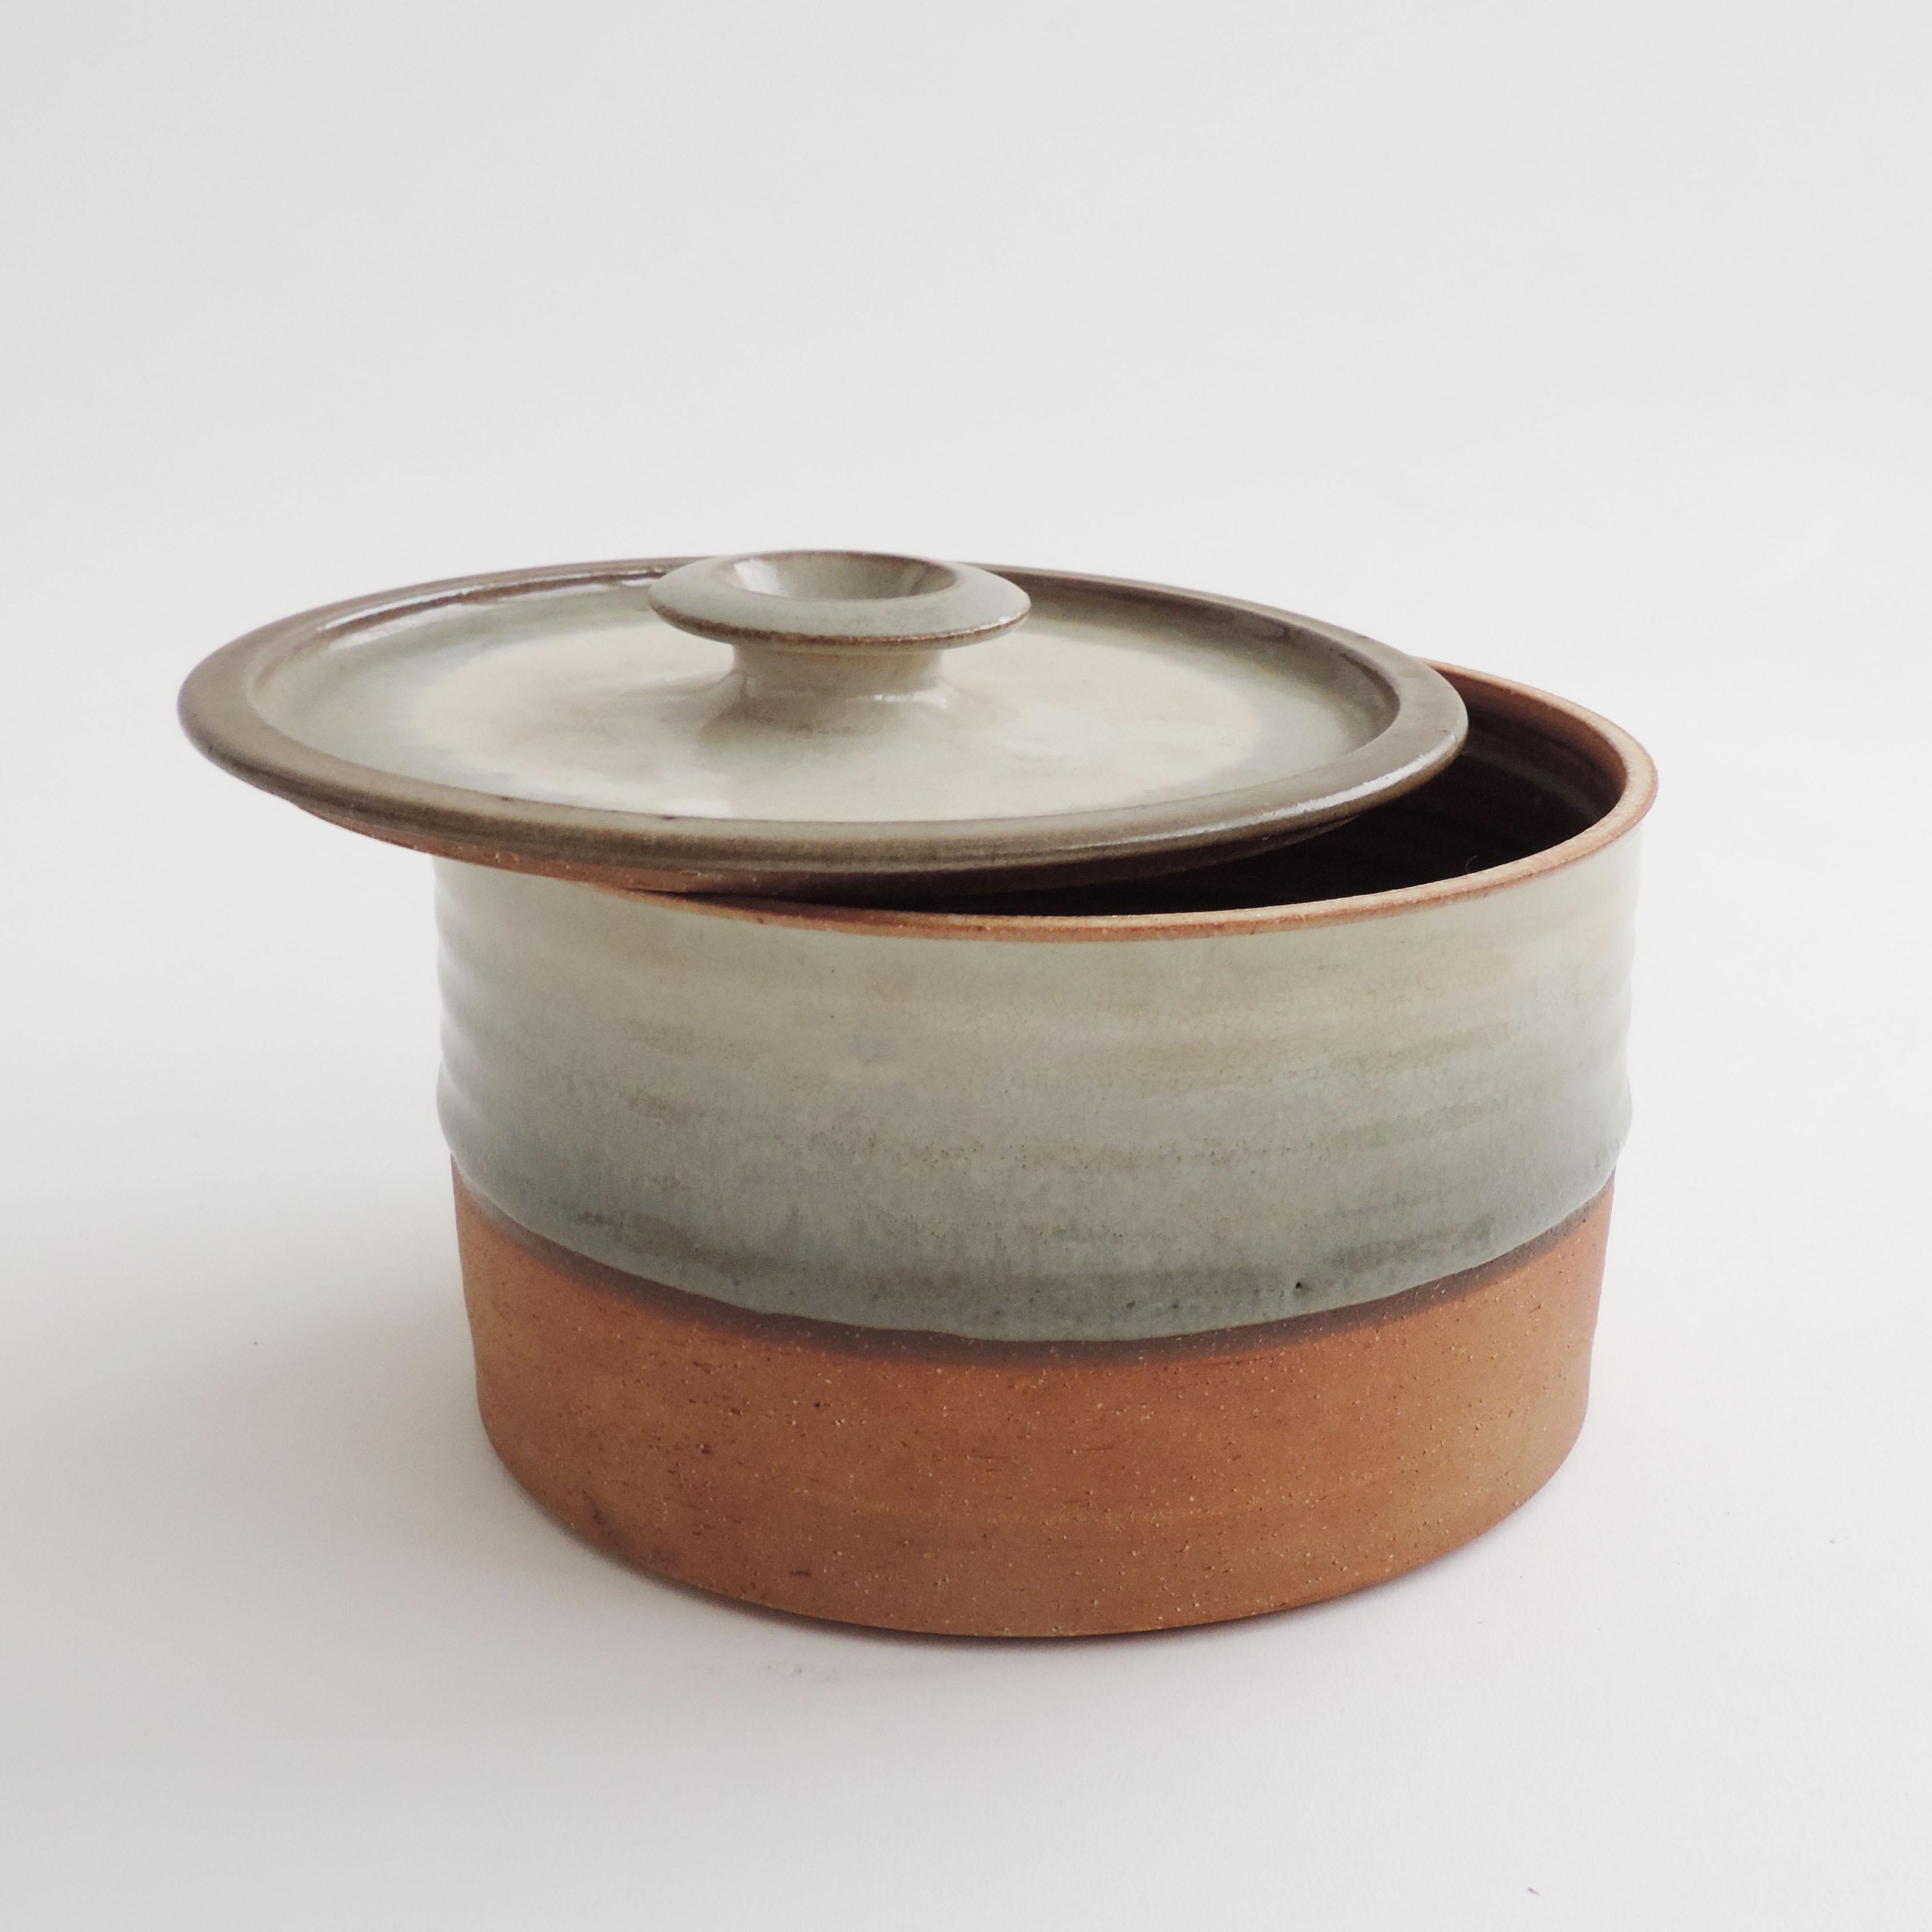 Italian Ceramic Jar and Cover by Nanni Valentini for Ceramica Arcore, Italy 1970s